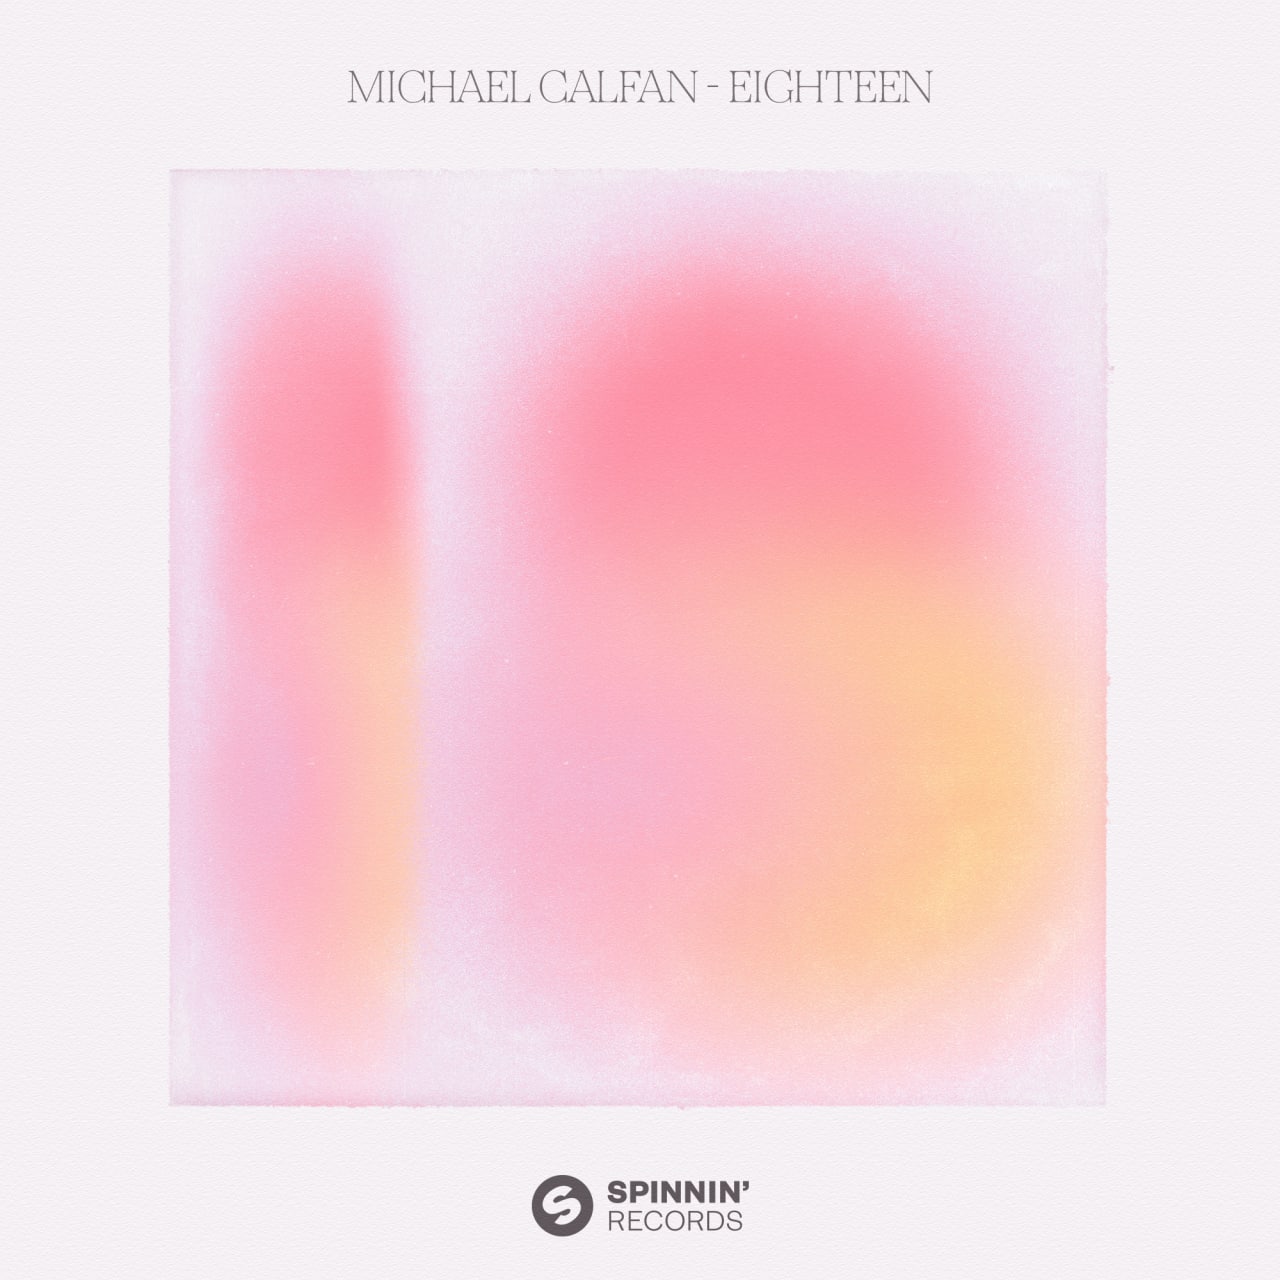 Michael Calfan - Eighteen (Extended Mix)